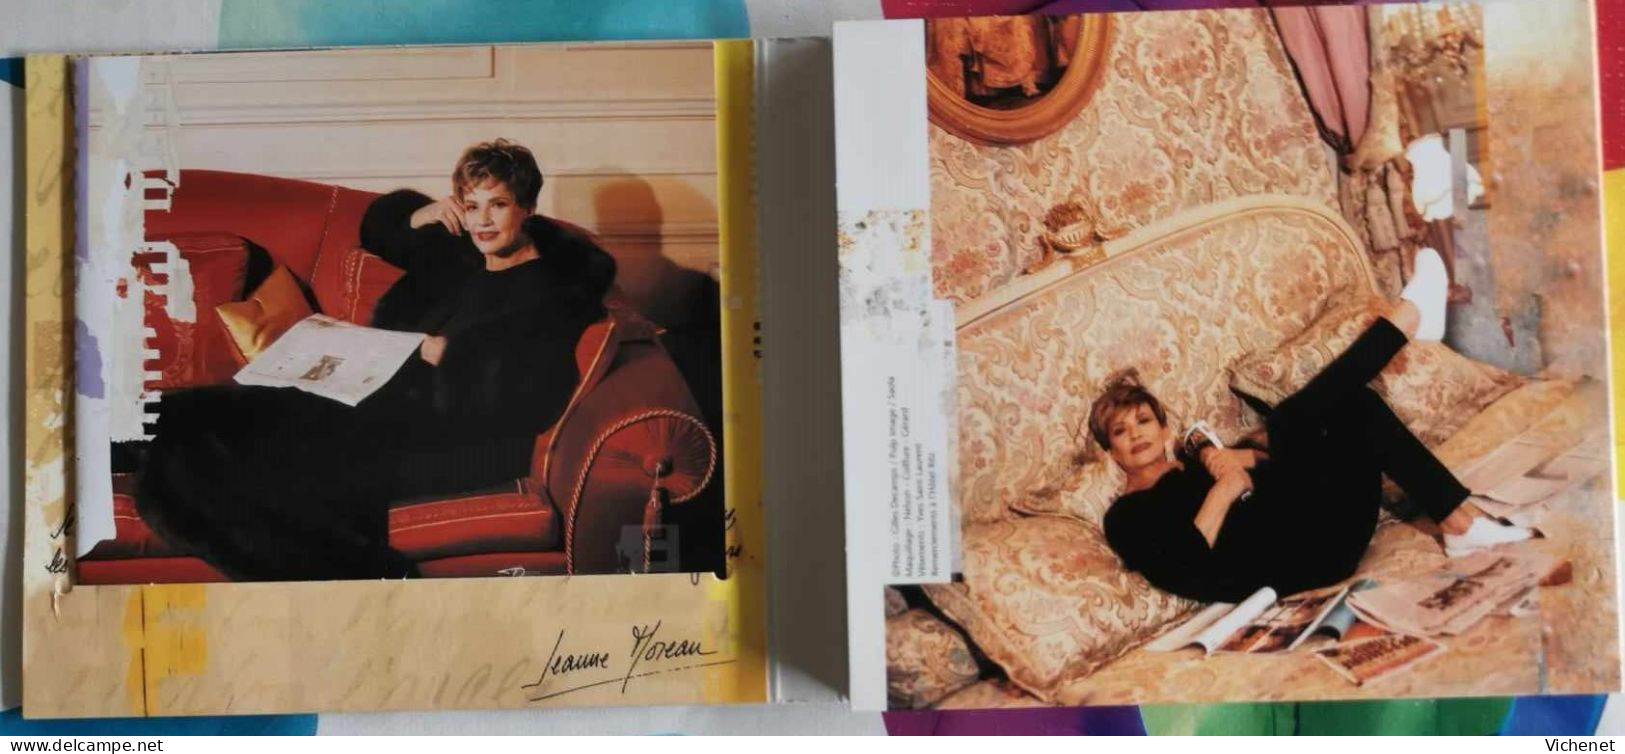 Jeanne Moreau – L'Album Collection - 2CD - Altri - Francese